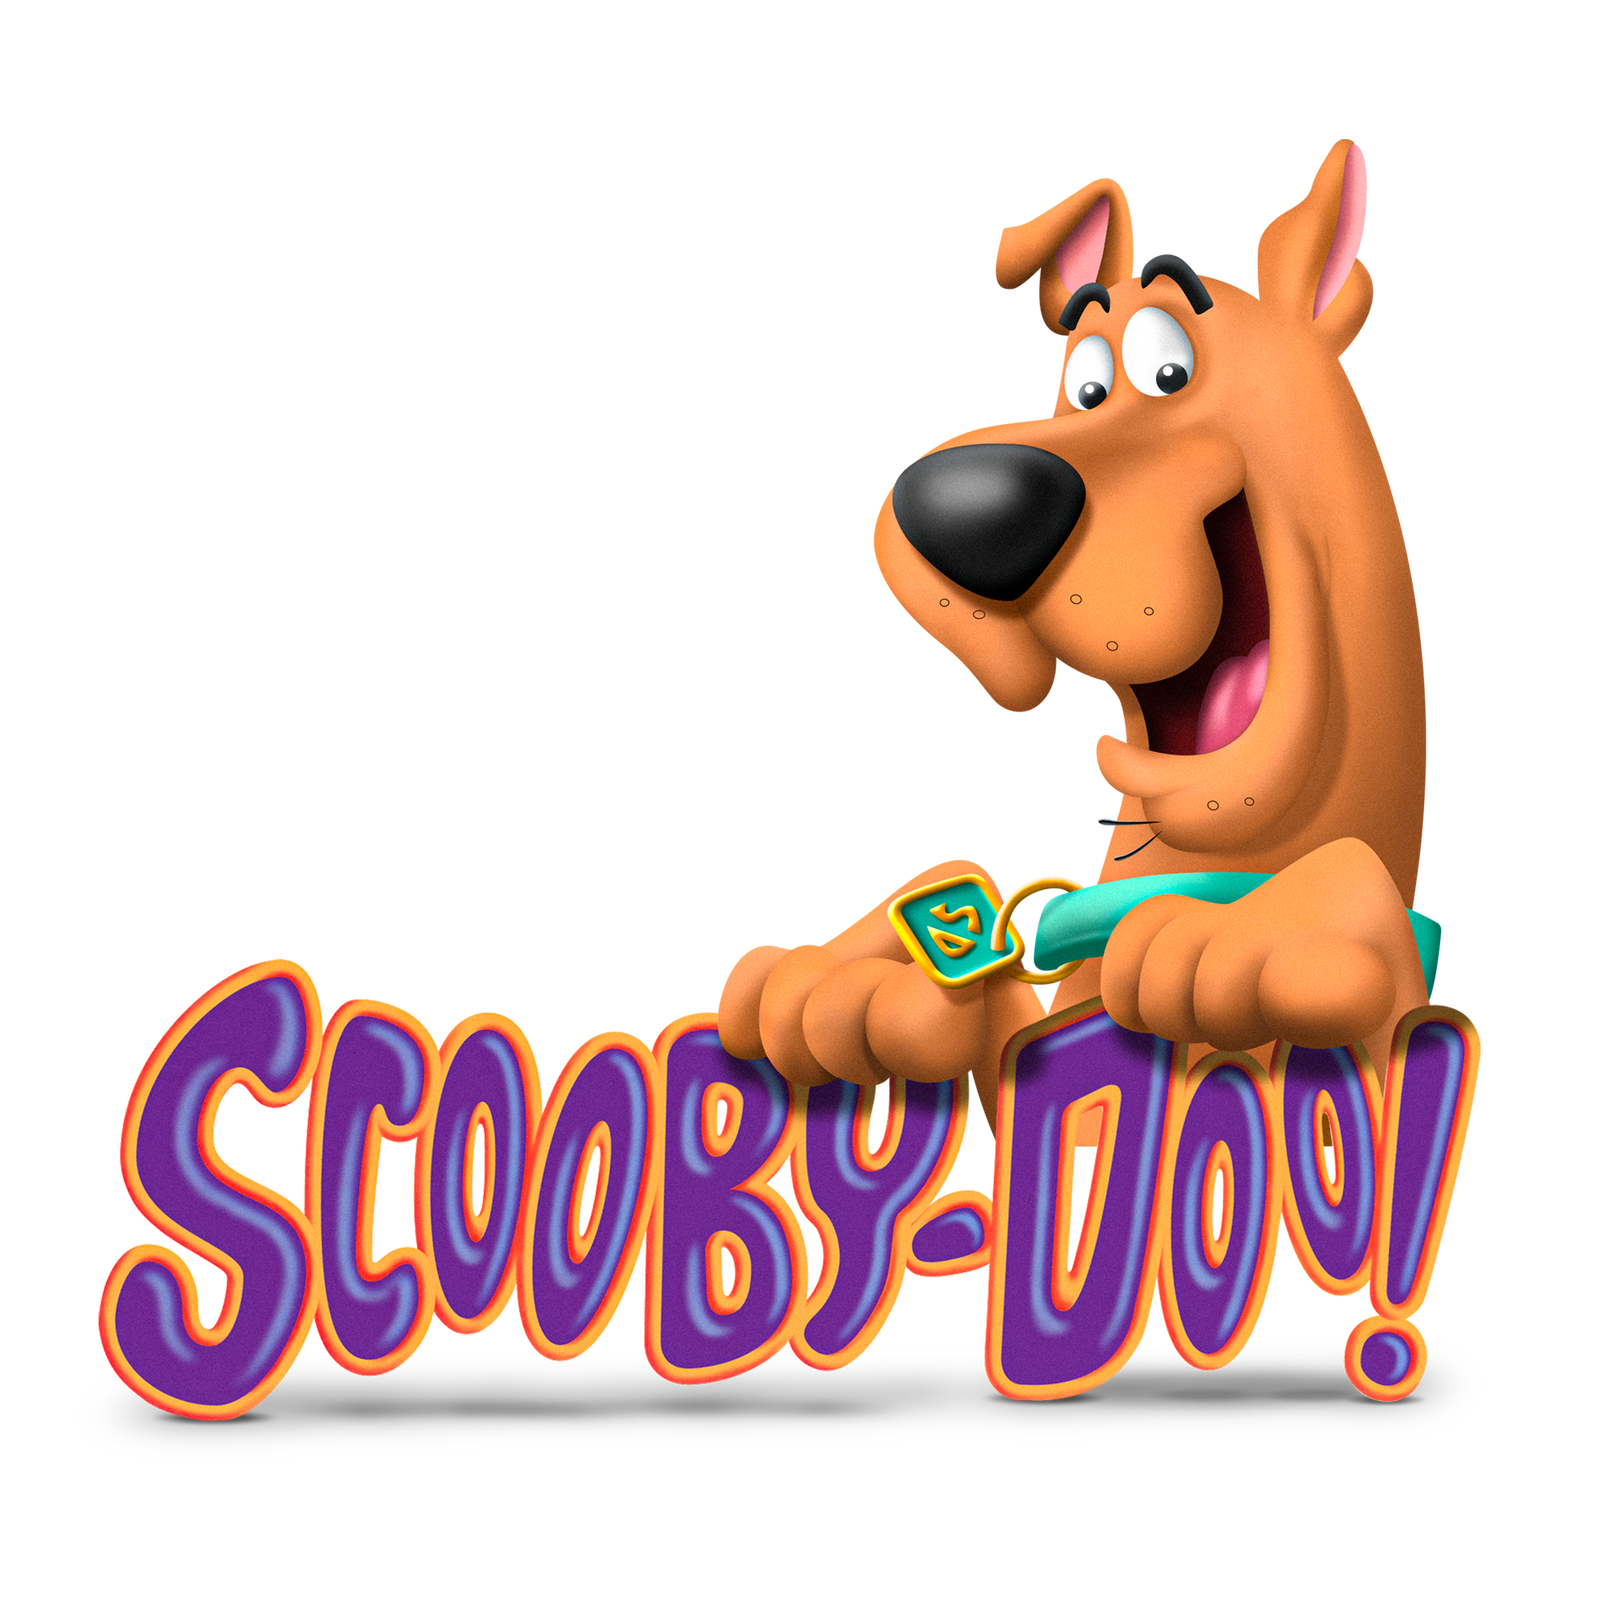 Scooby Doo logo.